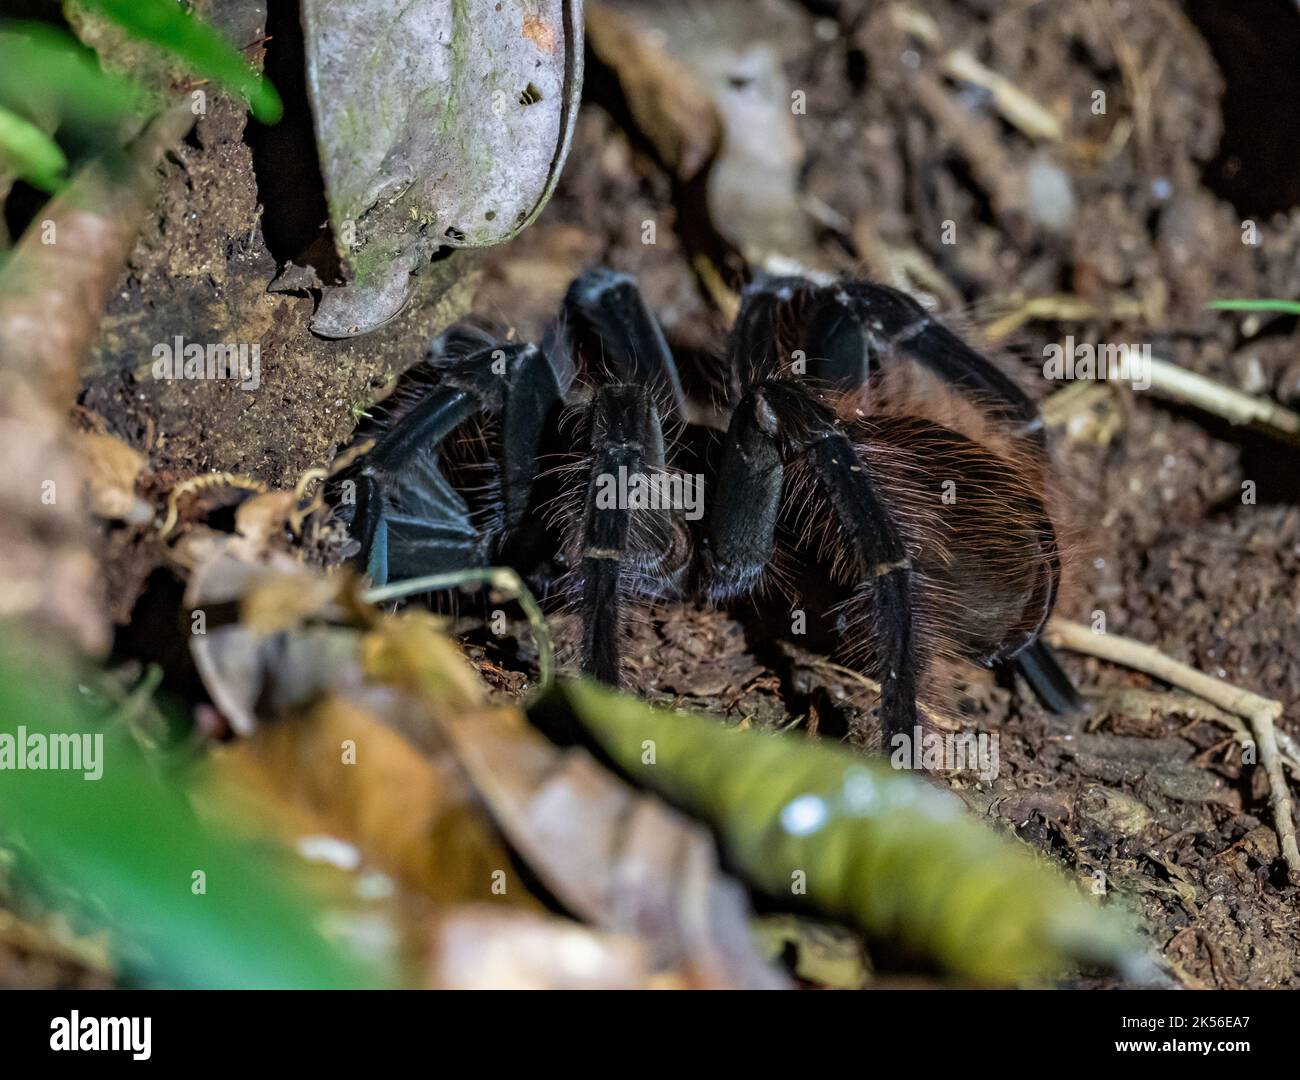 Una Tarantola nera brasiliana selvaggia (Grammostola pulchra) sul pavimento della foresta di notte. Amazonas, Brasile. Foto Stock